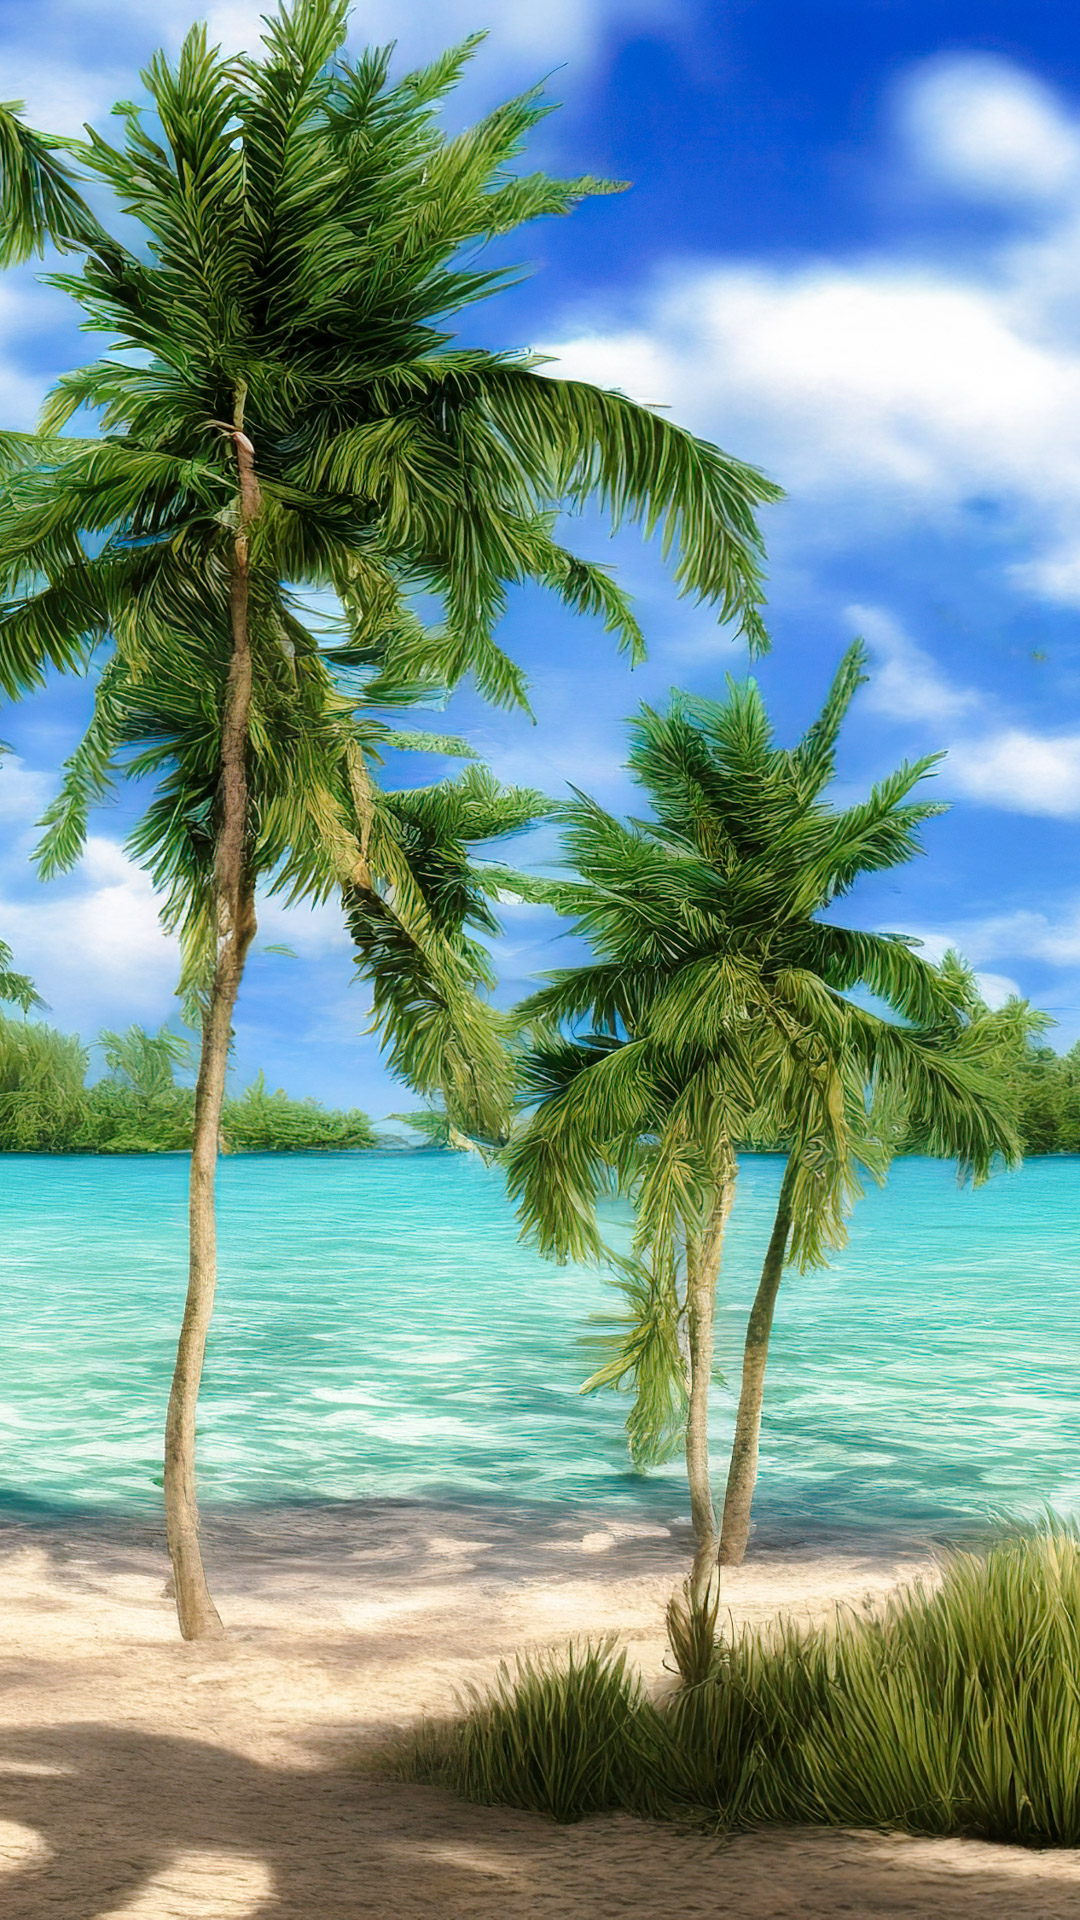 Ressentez la tranquillité de nos cool arrière-plans naturels, présentant une plage tranquille avec des eaux turquoise cristallines et des palmiers se balançant dans la brise.